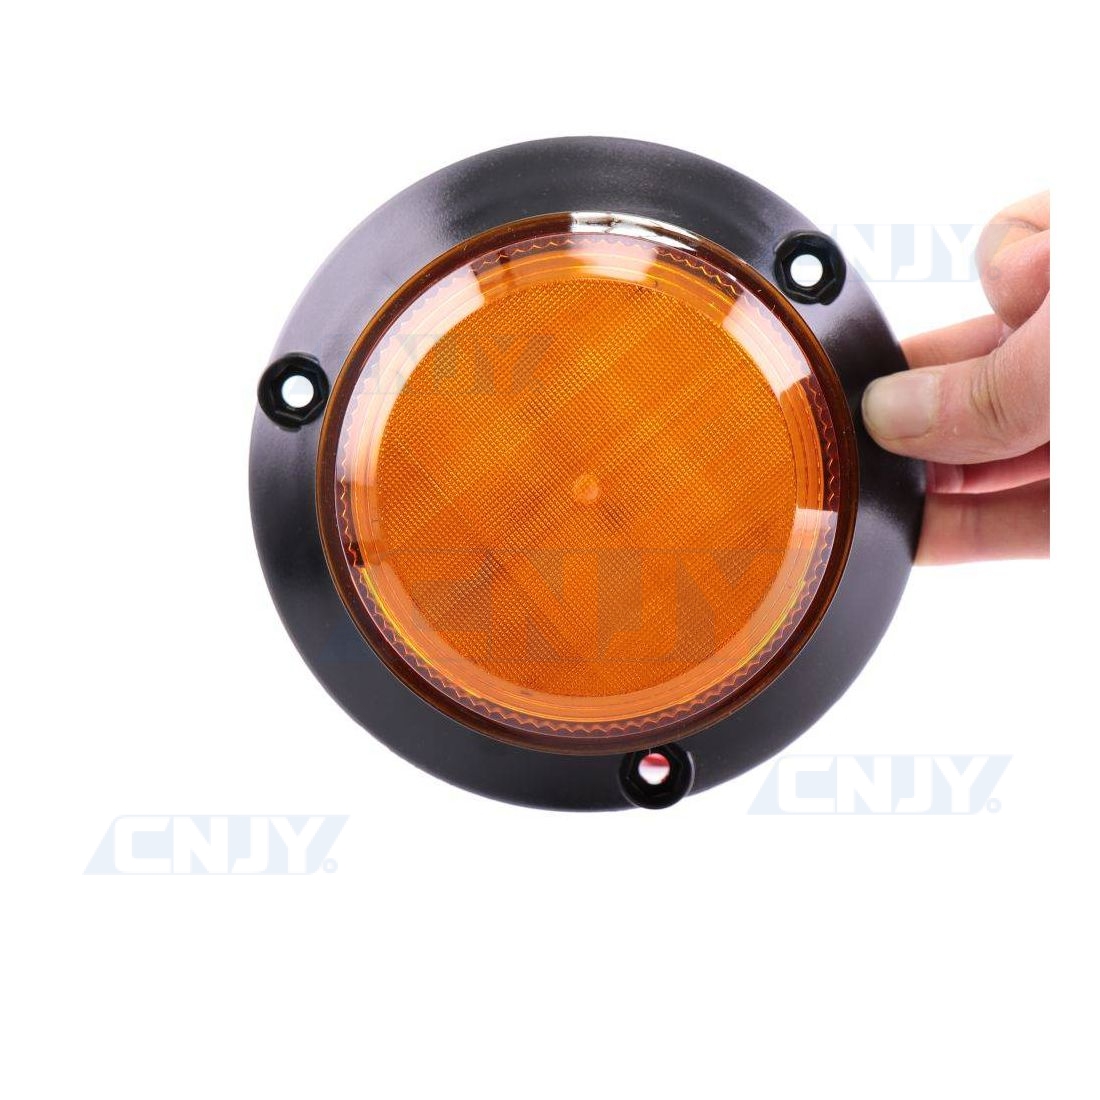 Set 4 Clignotants Moto LED Indicateurs De Direction Lumière Orange 12 V  Spots